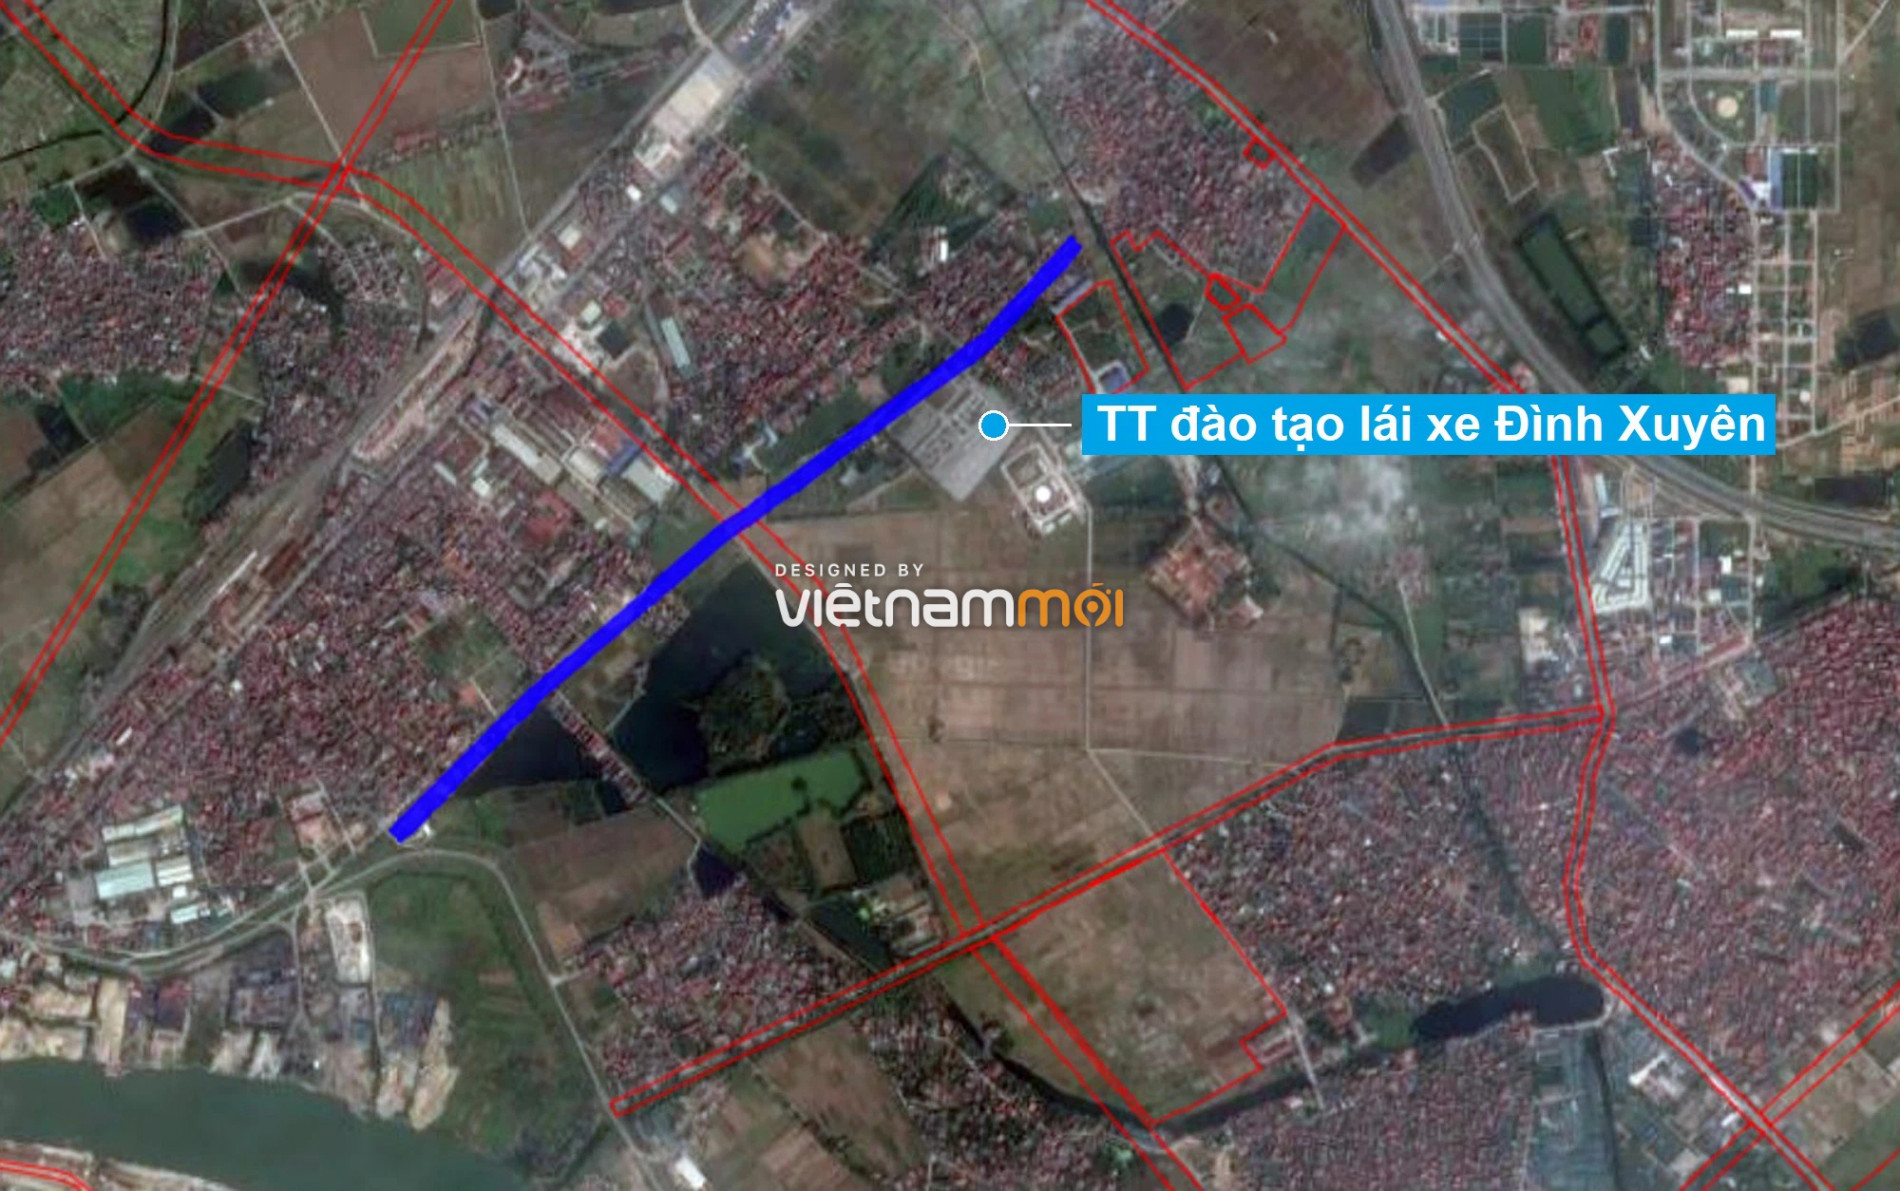 Những khu đất sắp thu hồi để mở đường ở huyện Gia Lâm, Hà Nội (phần 2) - Ảnh 14.